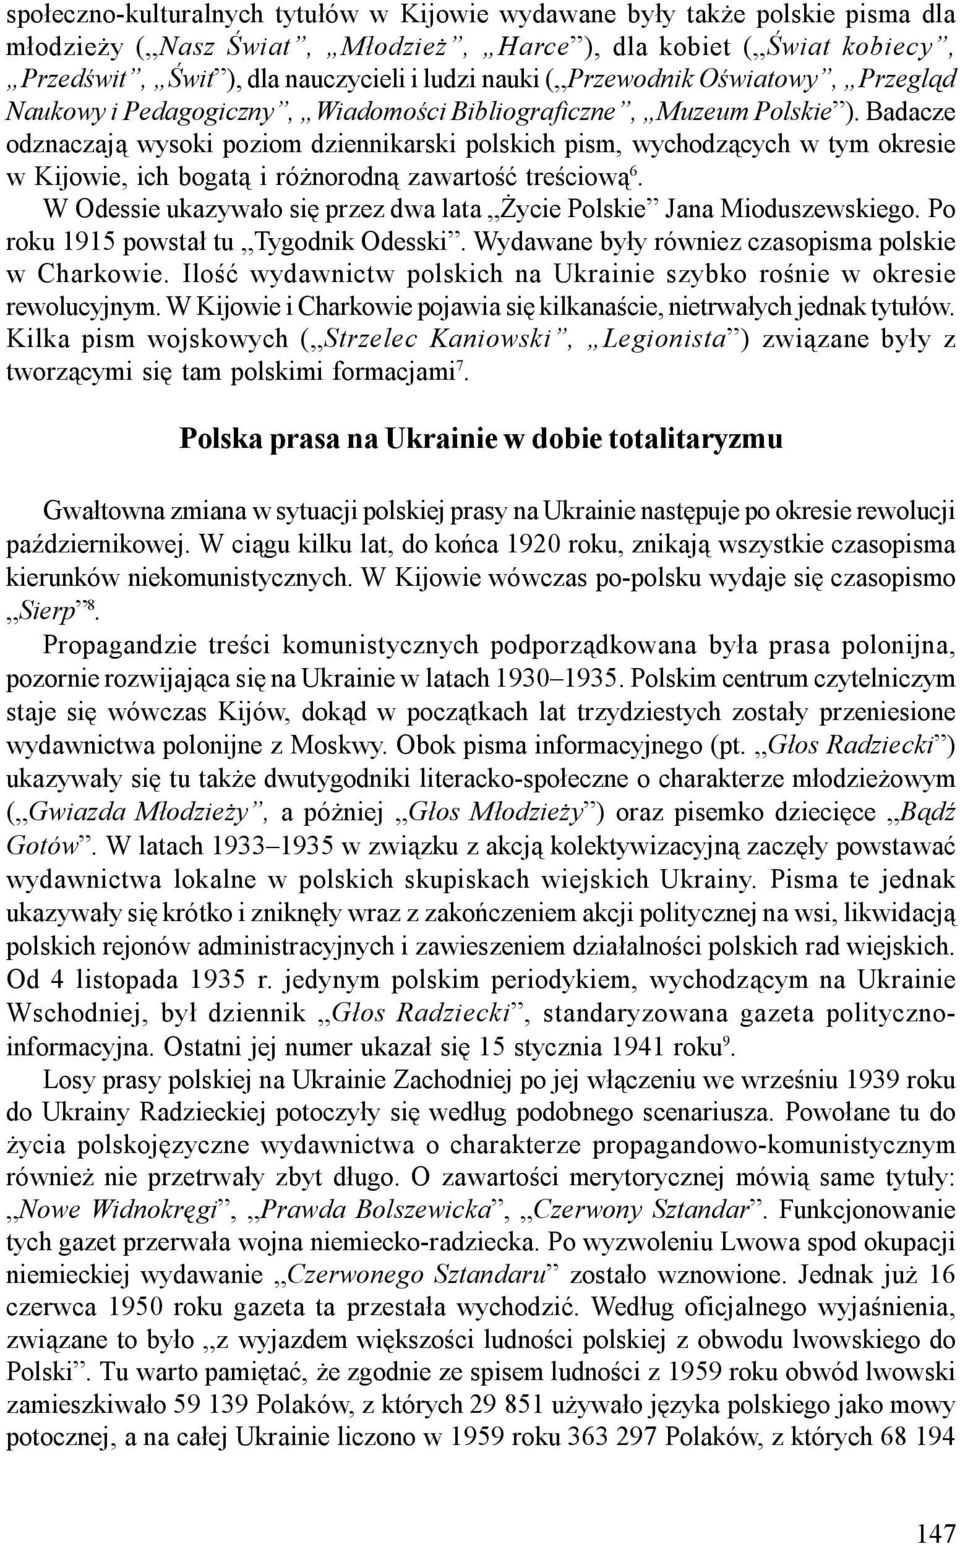 Badacze odznaczają wysoki poziom dziennikarski polskich pism, wychodzących w tym okresie w Kijowie, ich bogatą i różnorodną zawartość treściową 6.